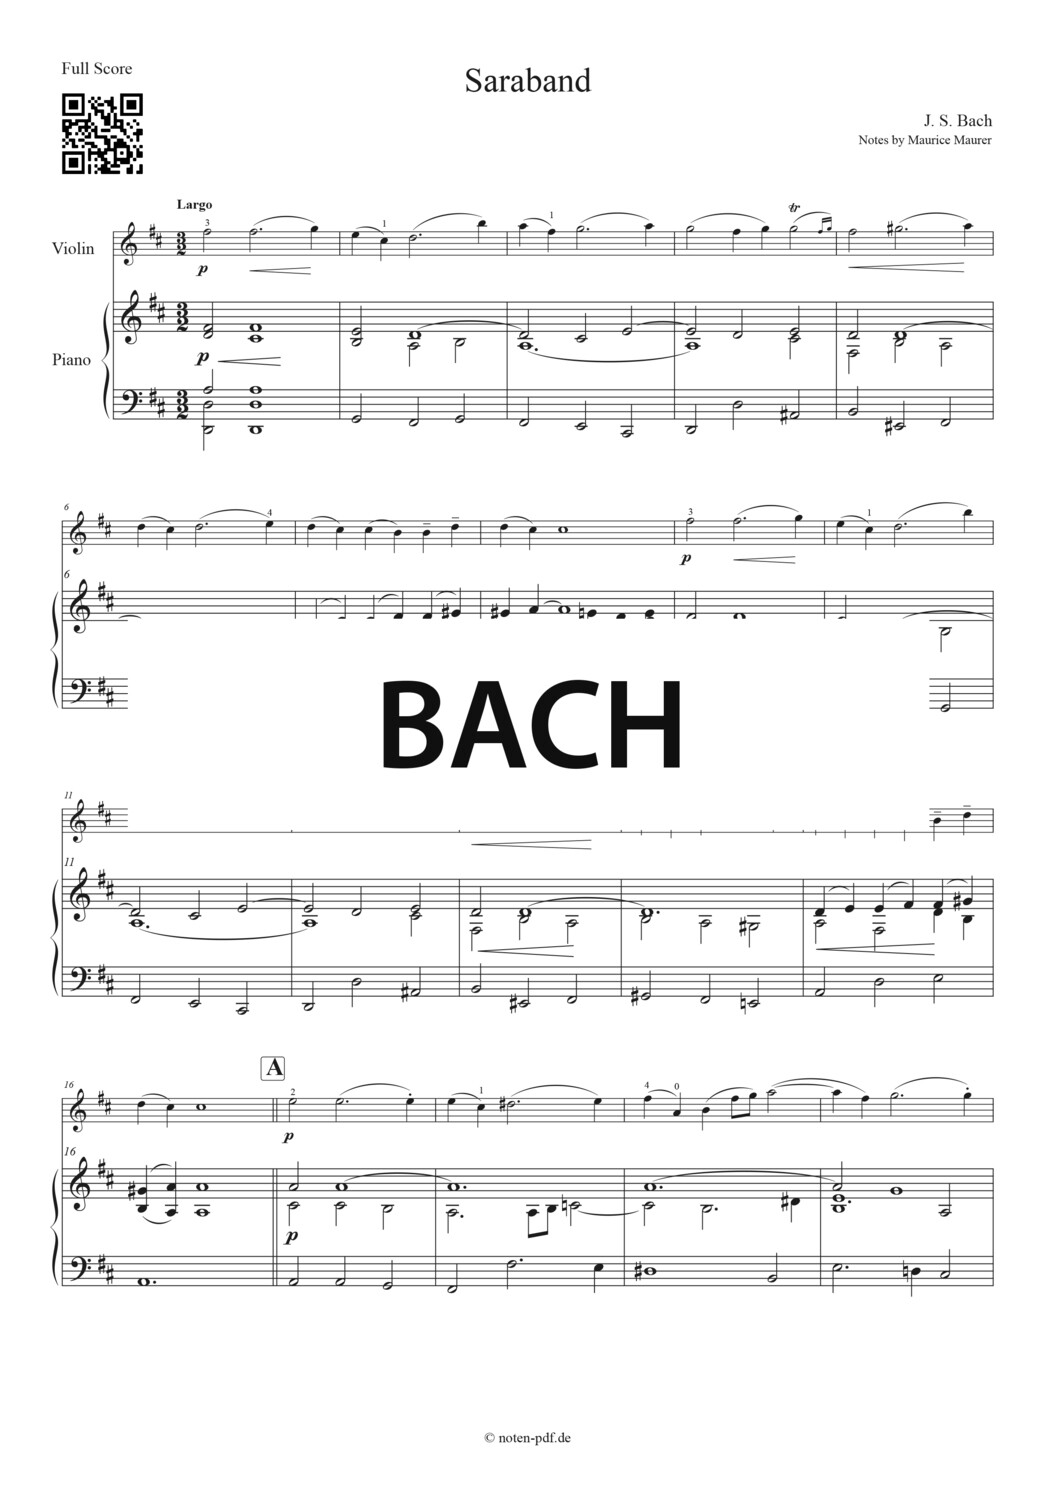 Bach: Saraband